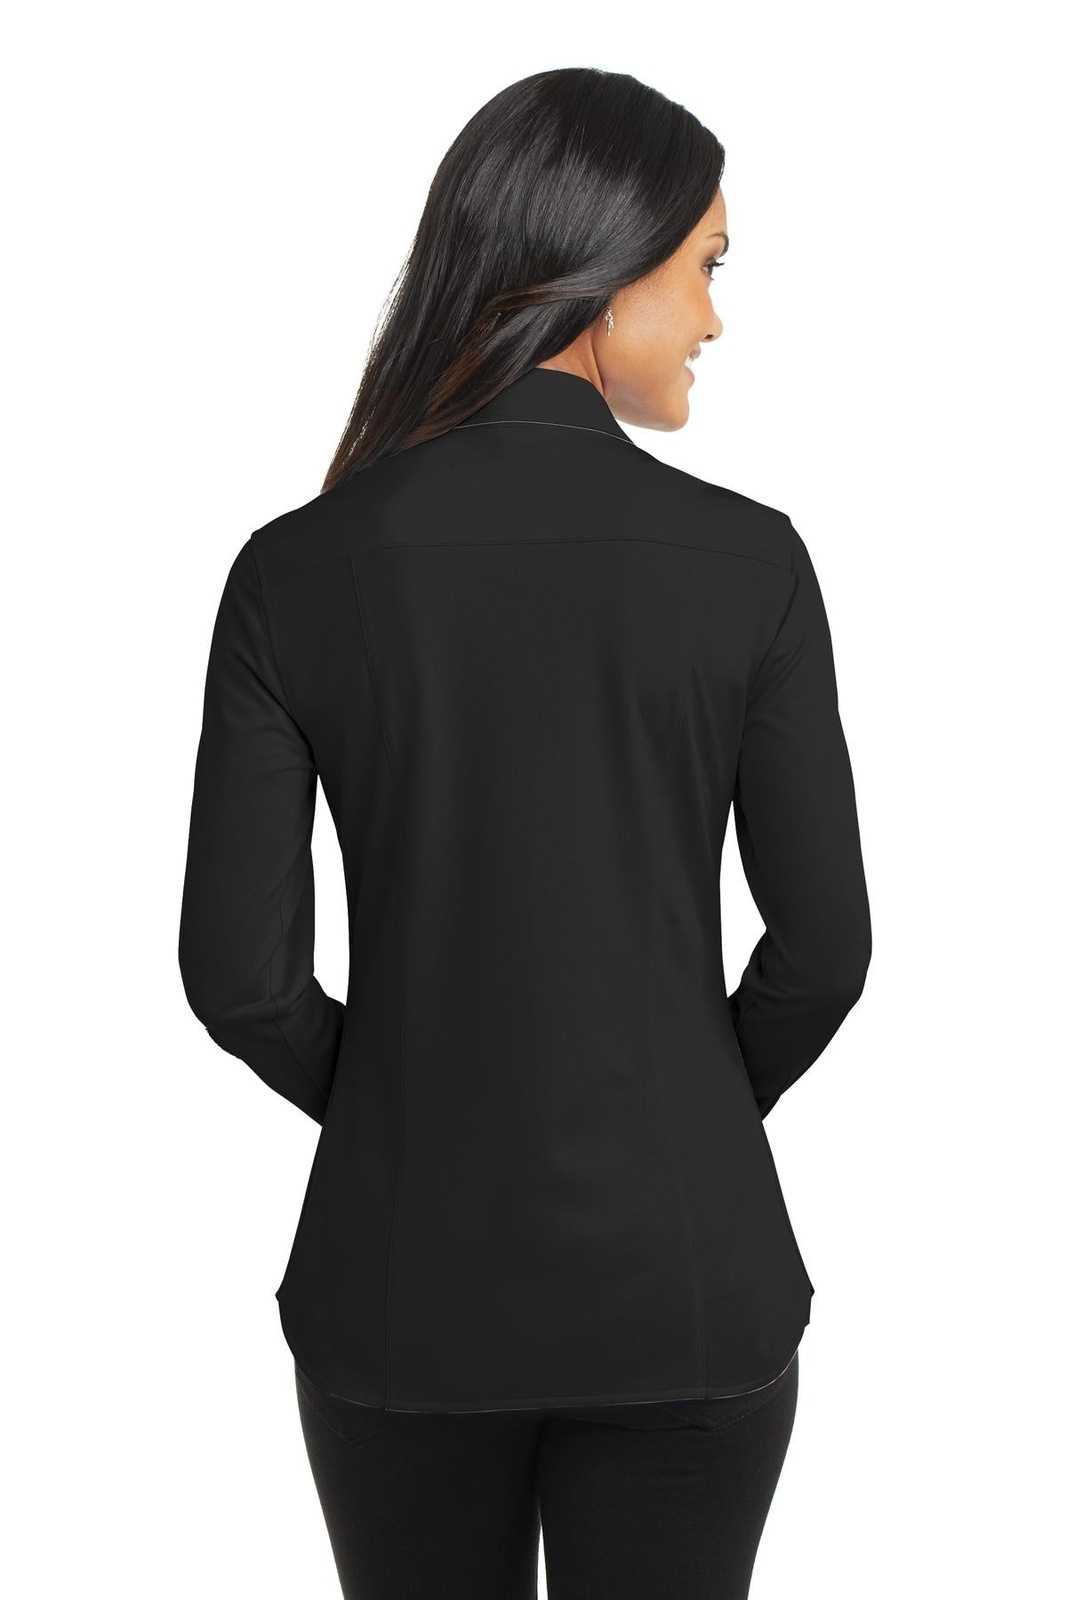 Port Authority L570 Ladies Dimension Knit Dress Shirt - Black - HIT a Double - 1